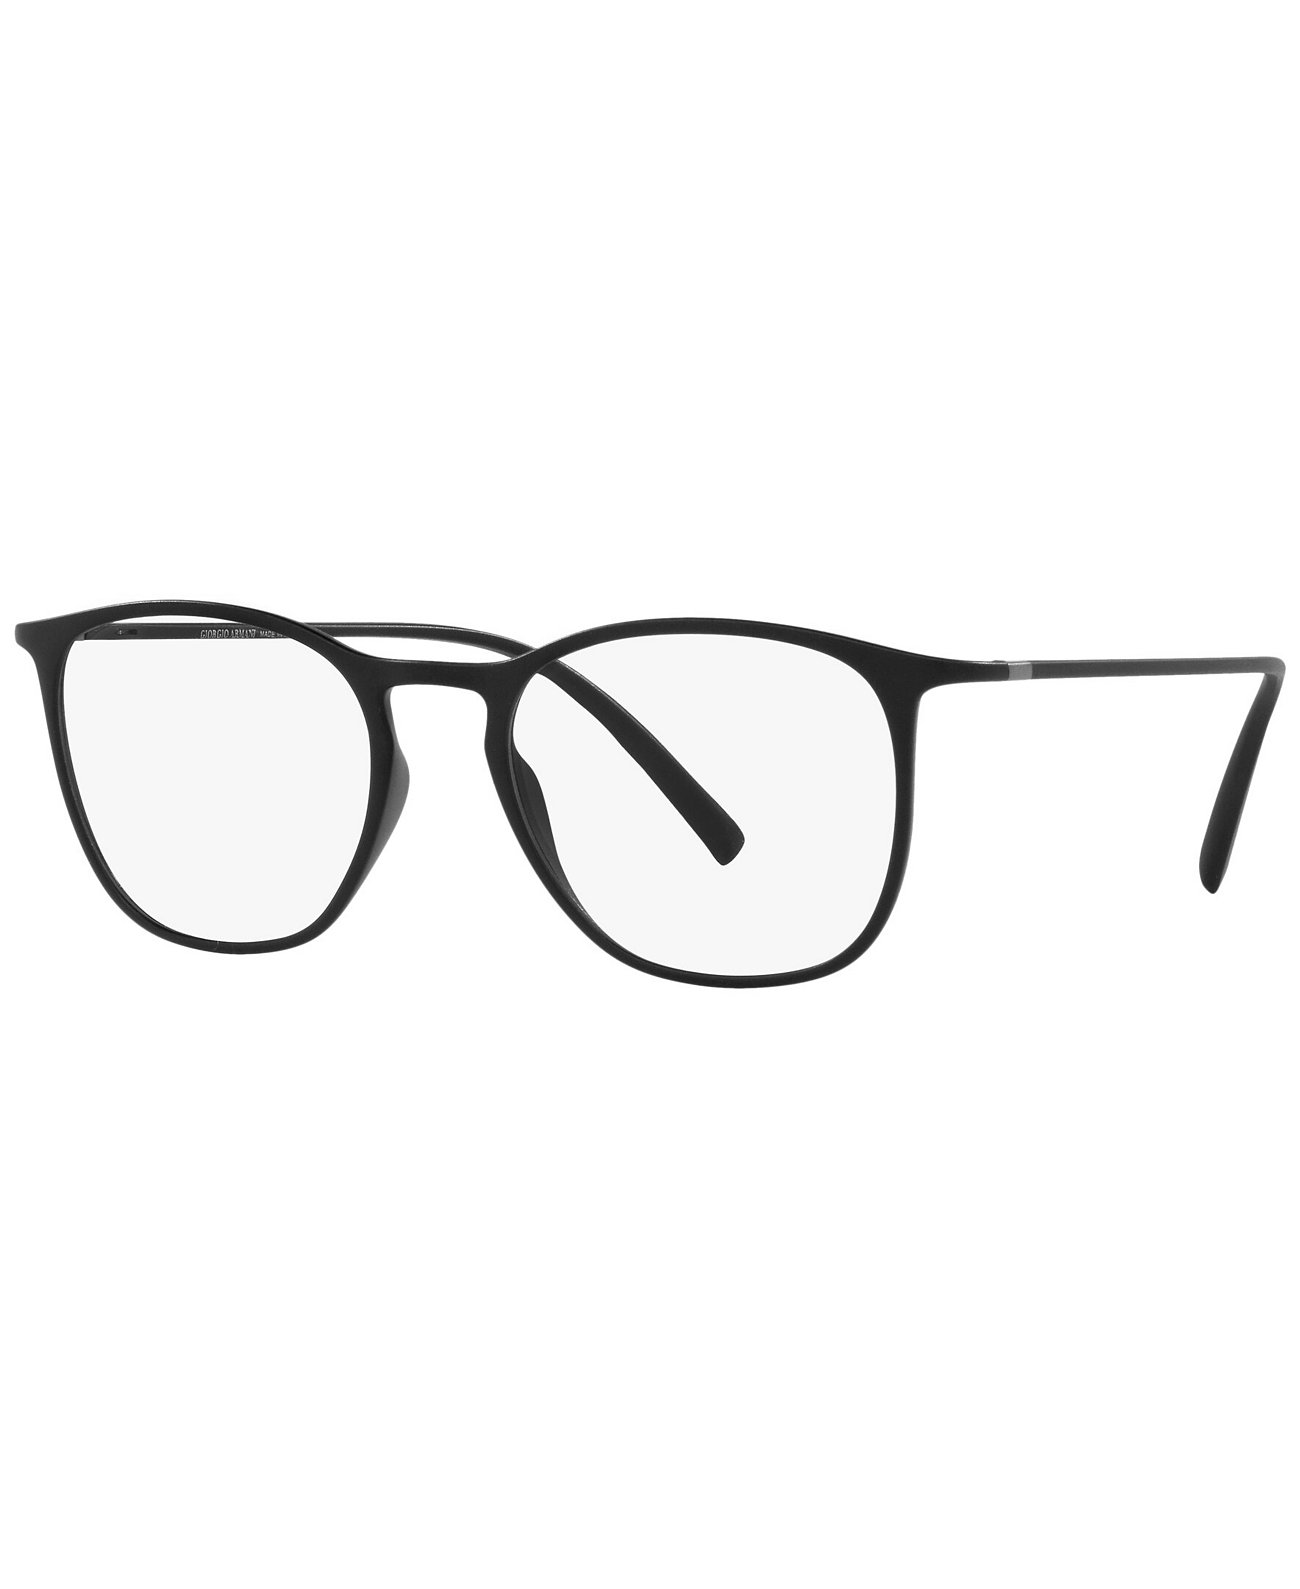 Мужские квадратные очки AR7202 Giorgio Armani